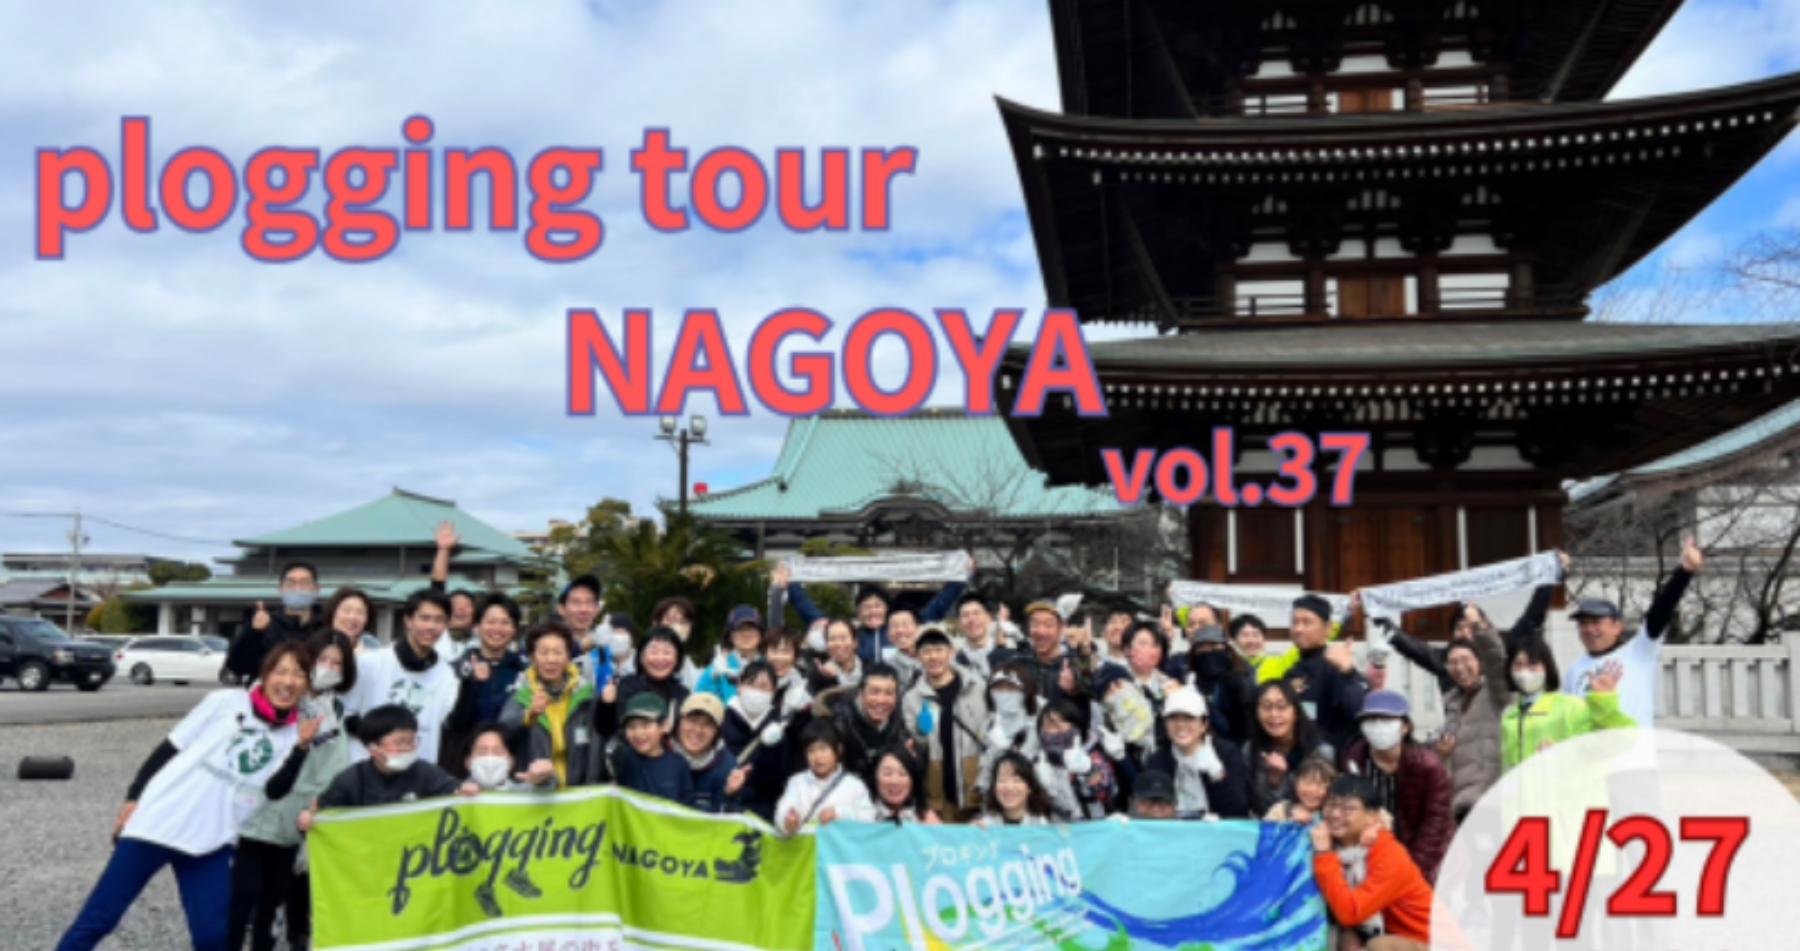 2024/4/27(土)9:30 plogging tour NAGOYA vol.37 守山区 ※名古屋市とのコラボ企画 ※プロギングツアー名古屋